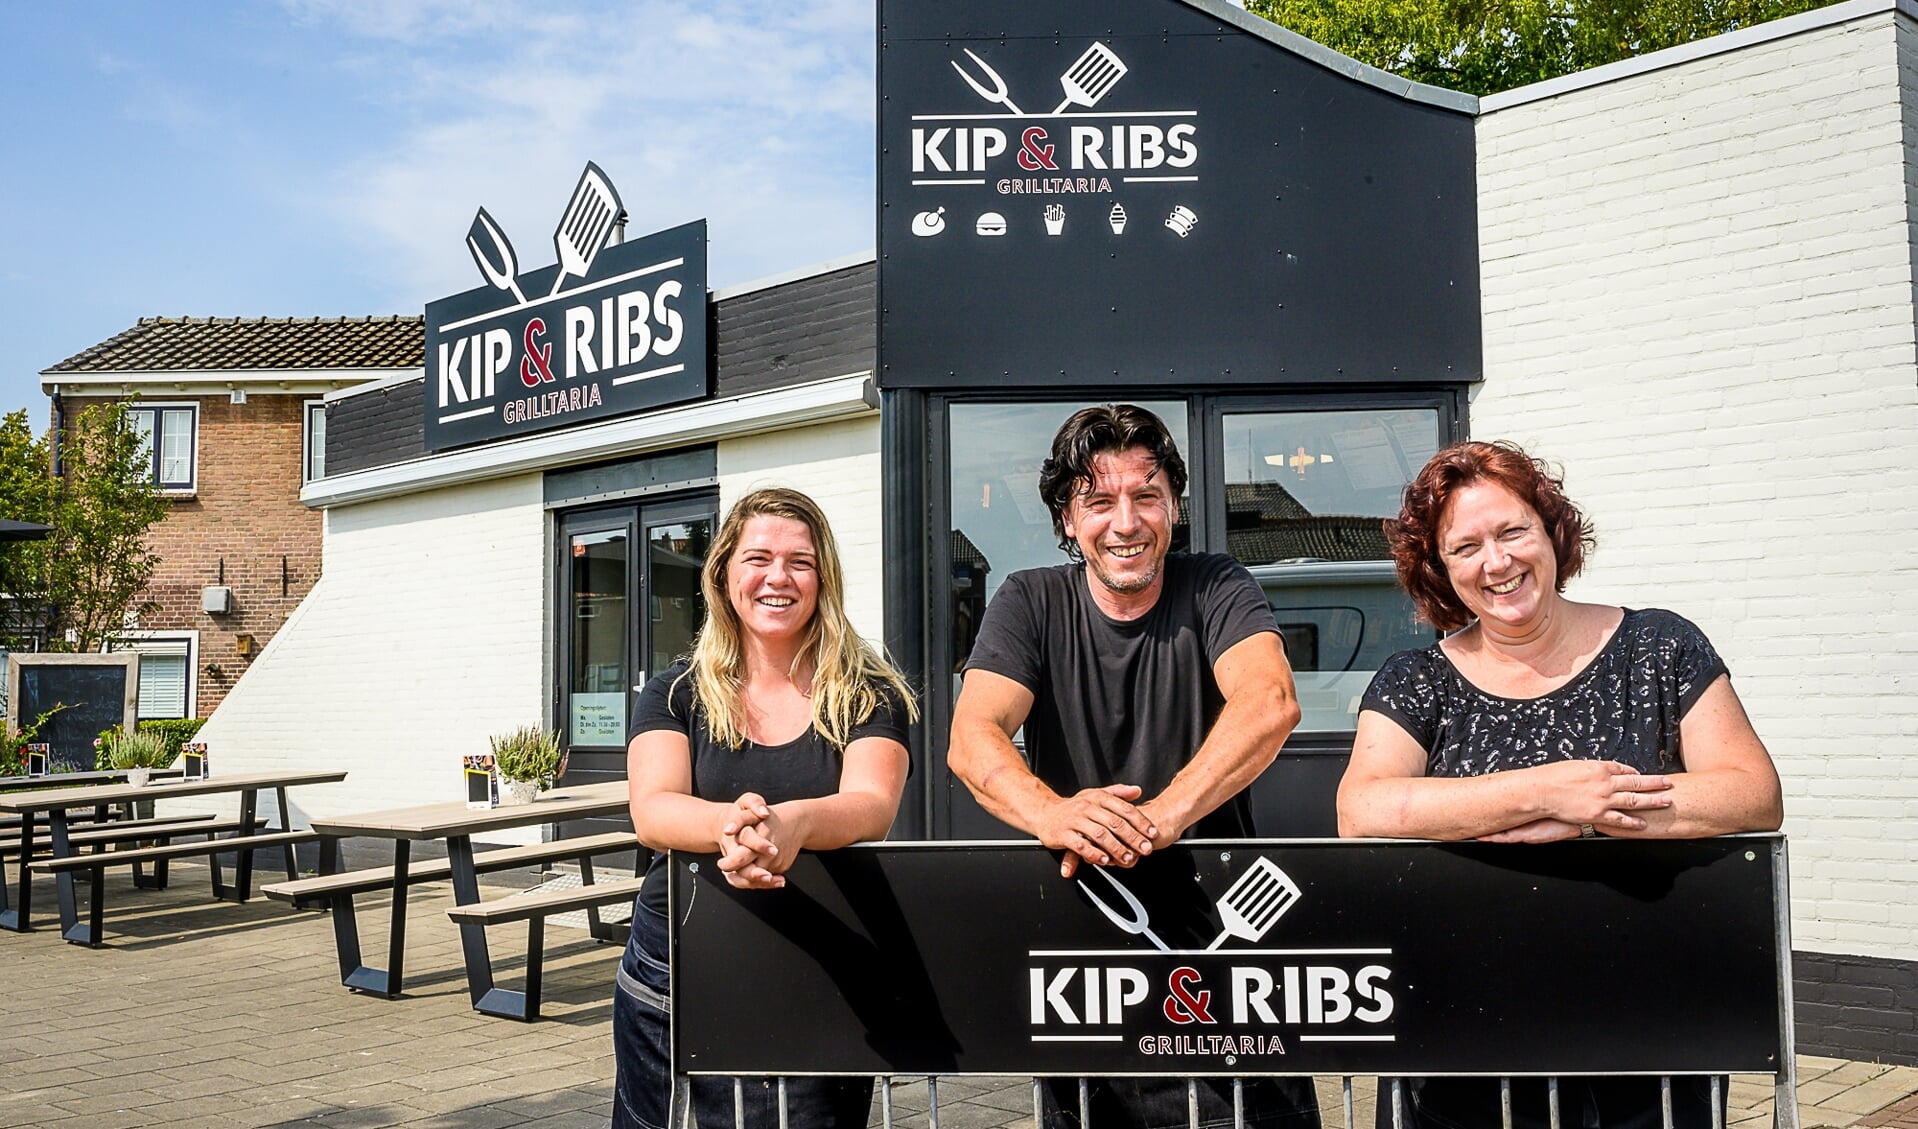 • Bedrijfsleider Noëlle en eigenaren Edwin en Leona Verbeek voor de nieuwe grilltaria Kip & Ribs.